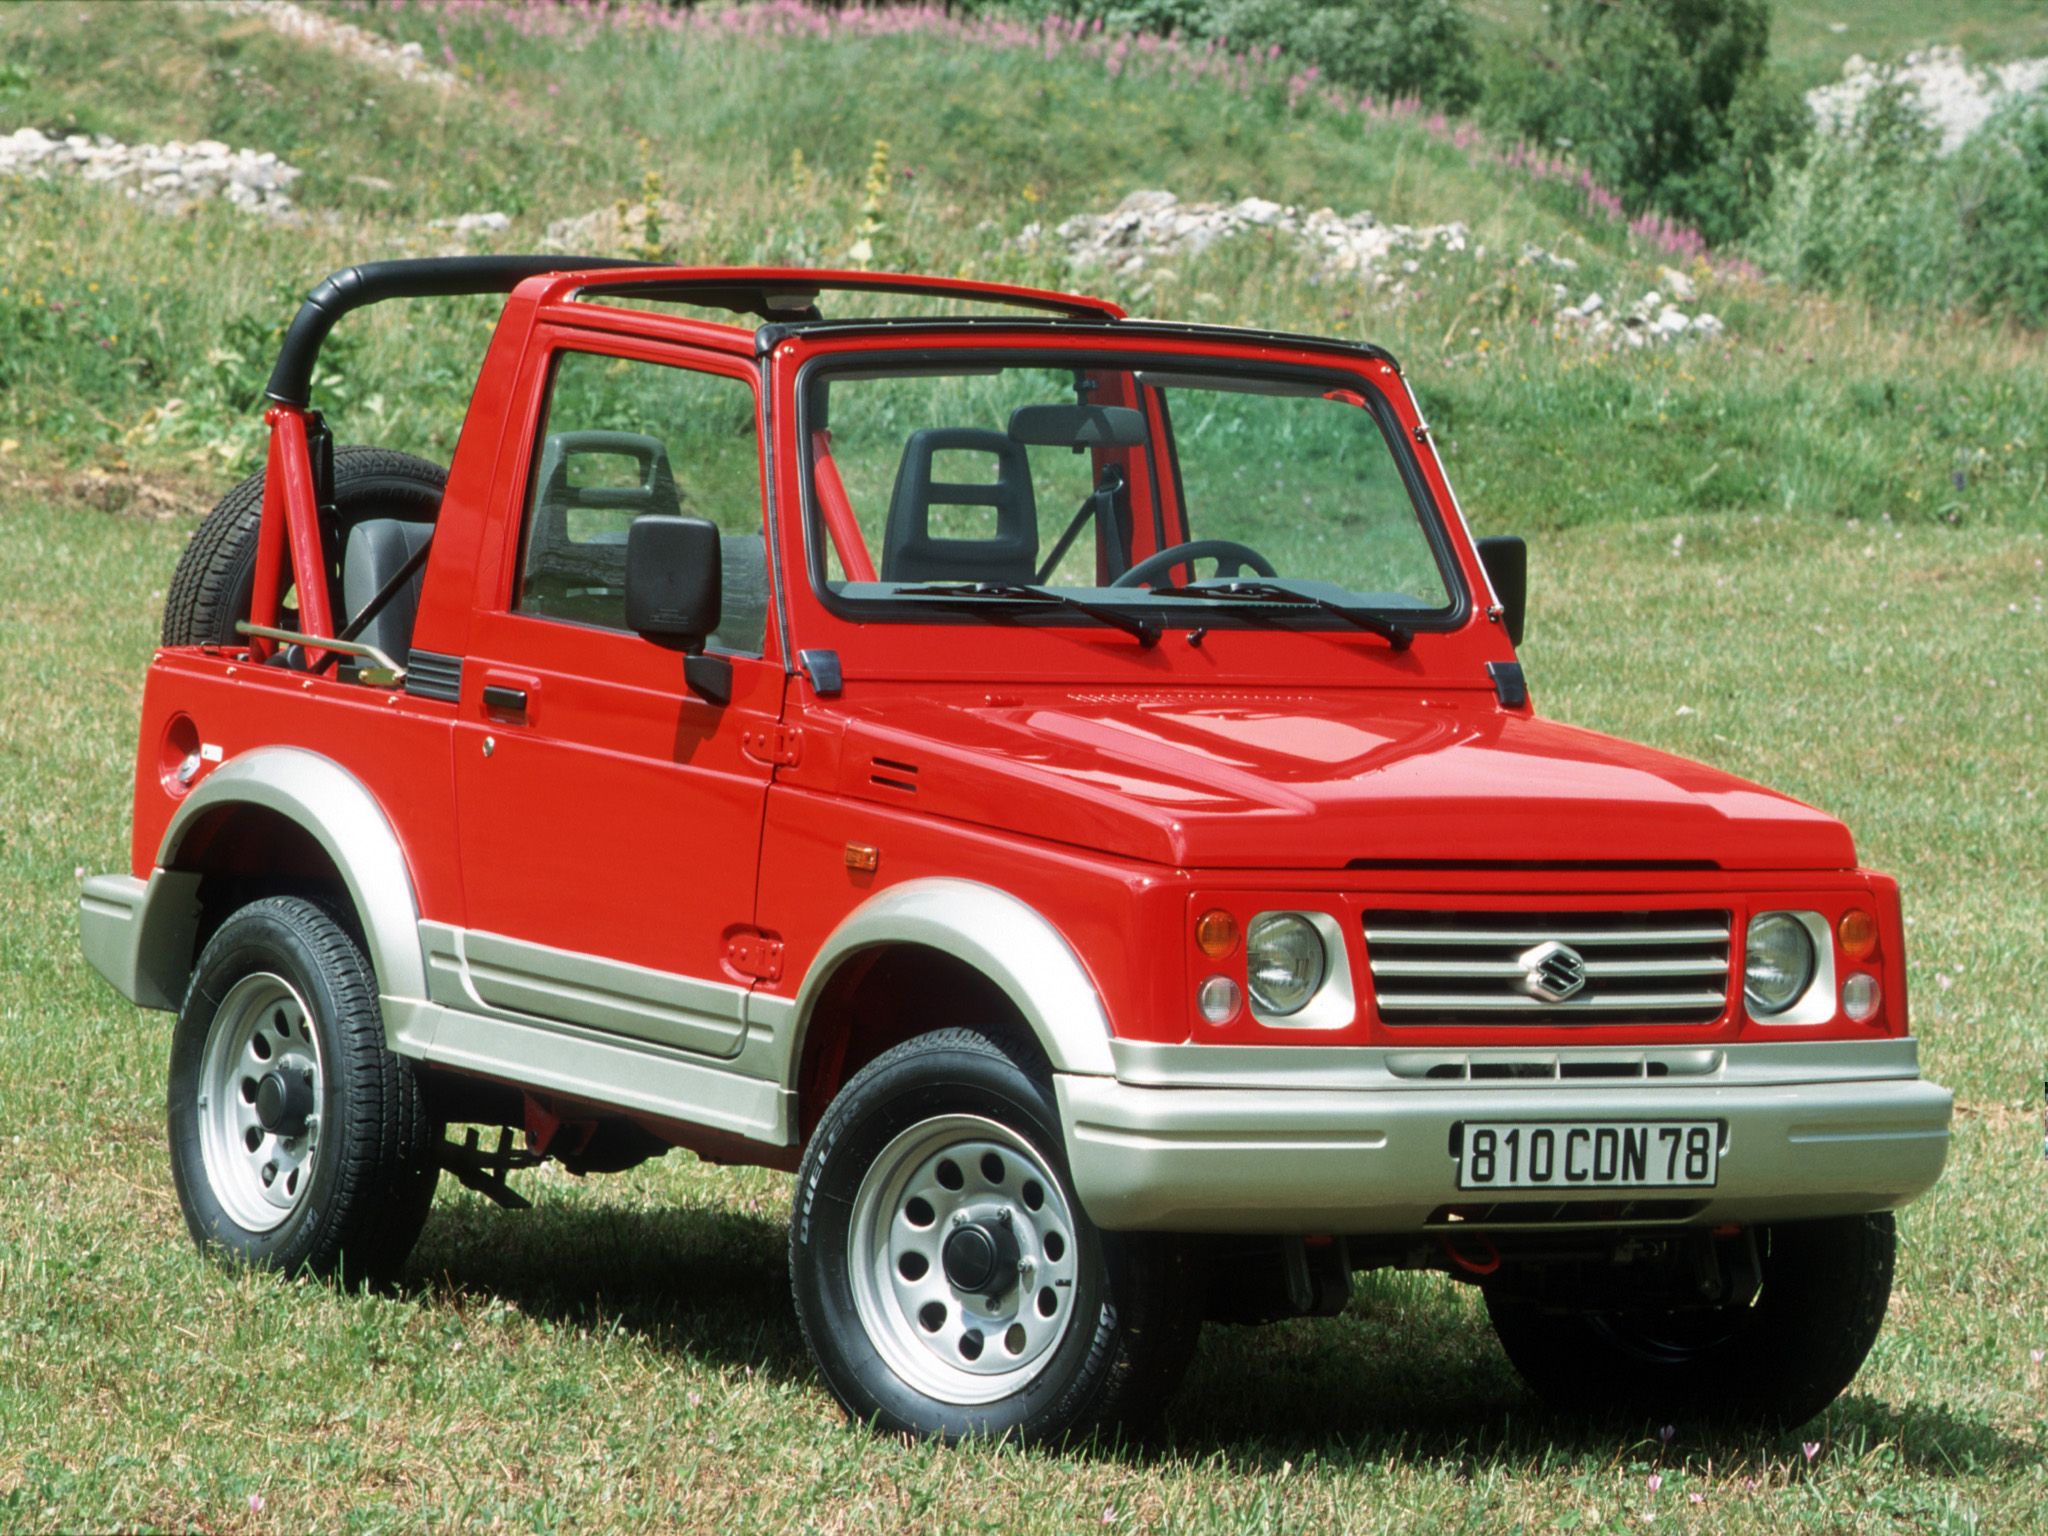 1993 Suzuki Samurai Price, Value, Ratings & Reviews